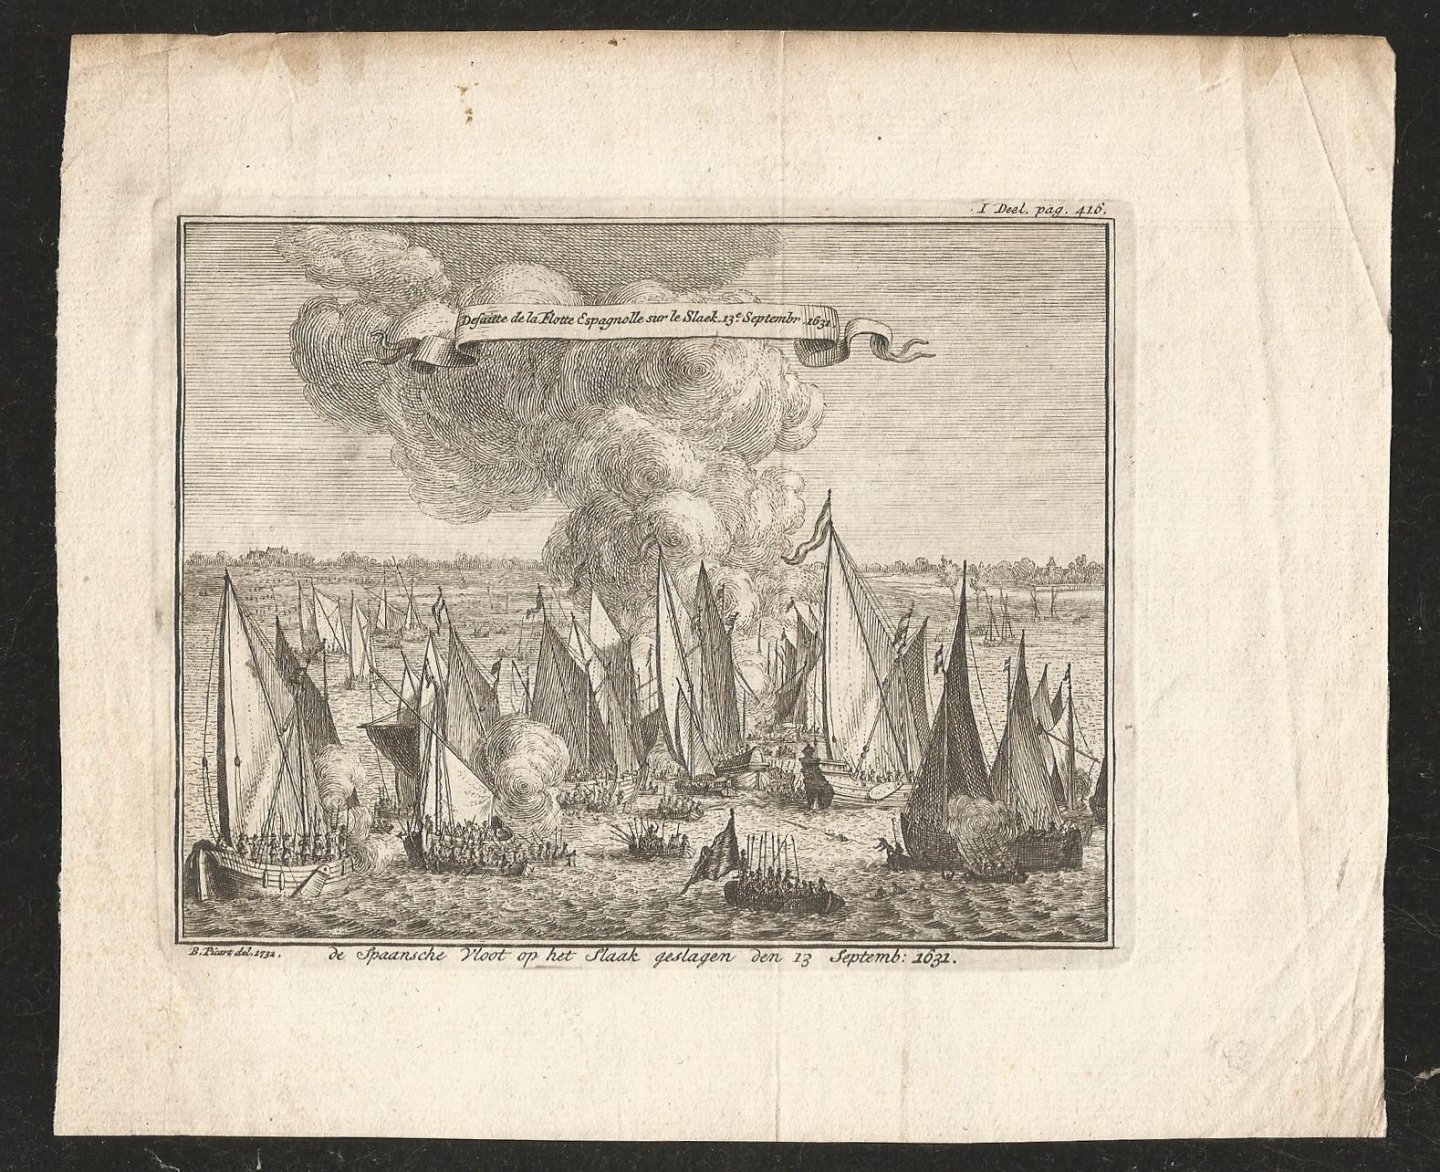 Picart, B. - de Spaansche Vloot op het Slaak geslagen den 13 Septemb: 1631.